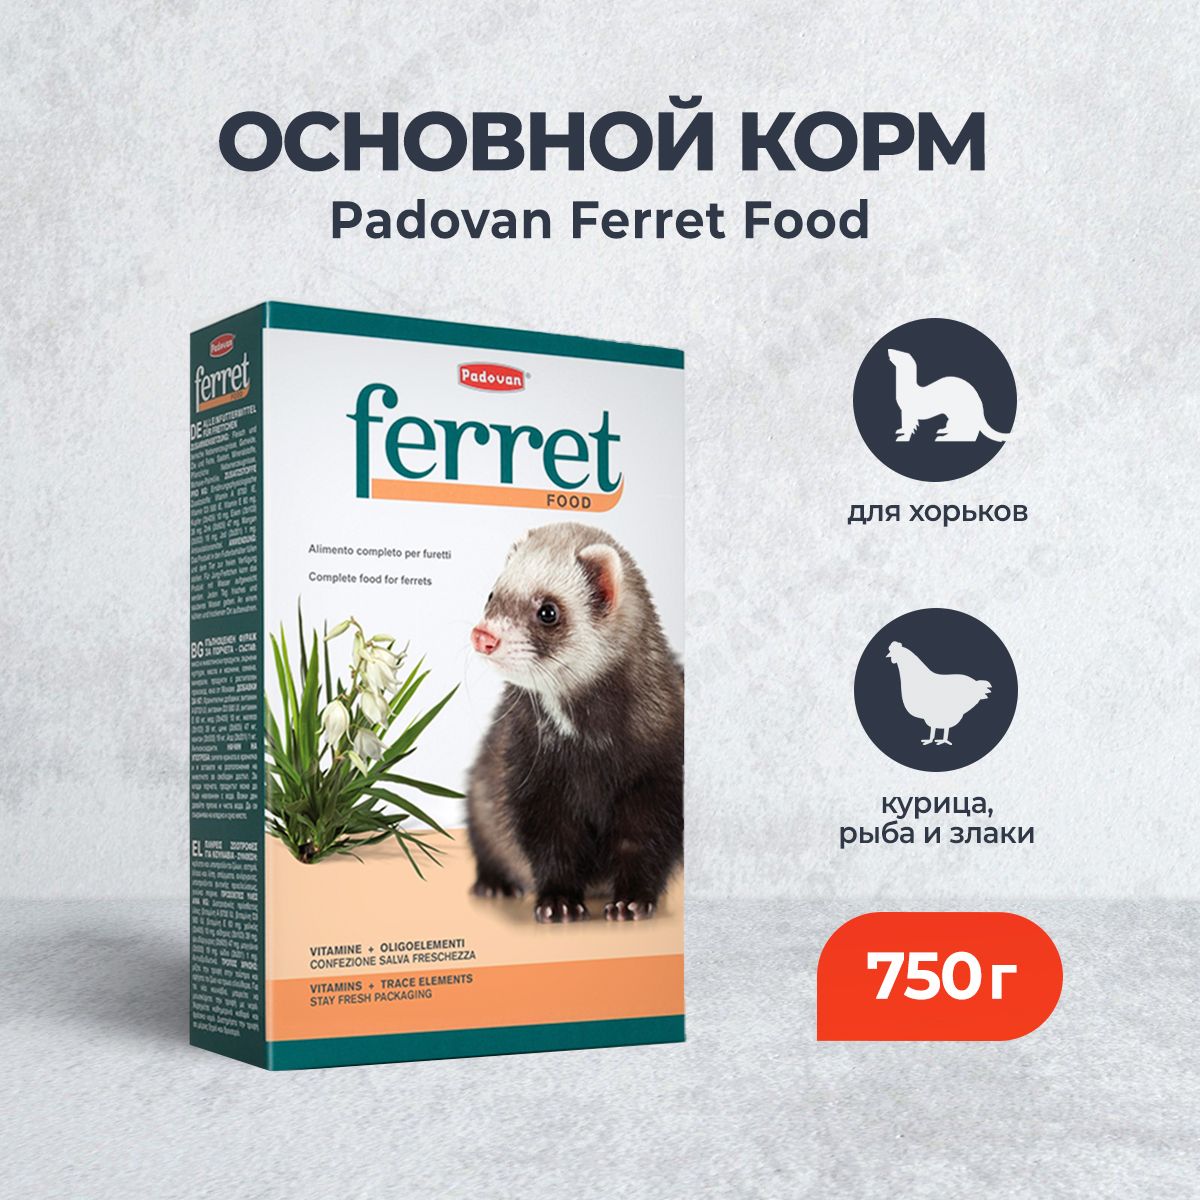 Padovan Ferret Food комплексный основной сухой корм для хорьков - 750 г -  купить с доставкой по выгодным ценам в интернет-магазине OZON (674897010)